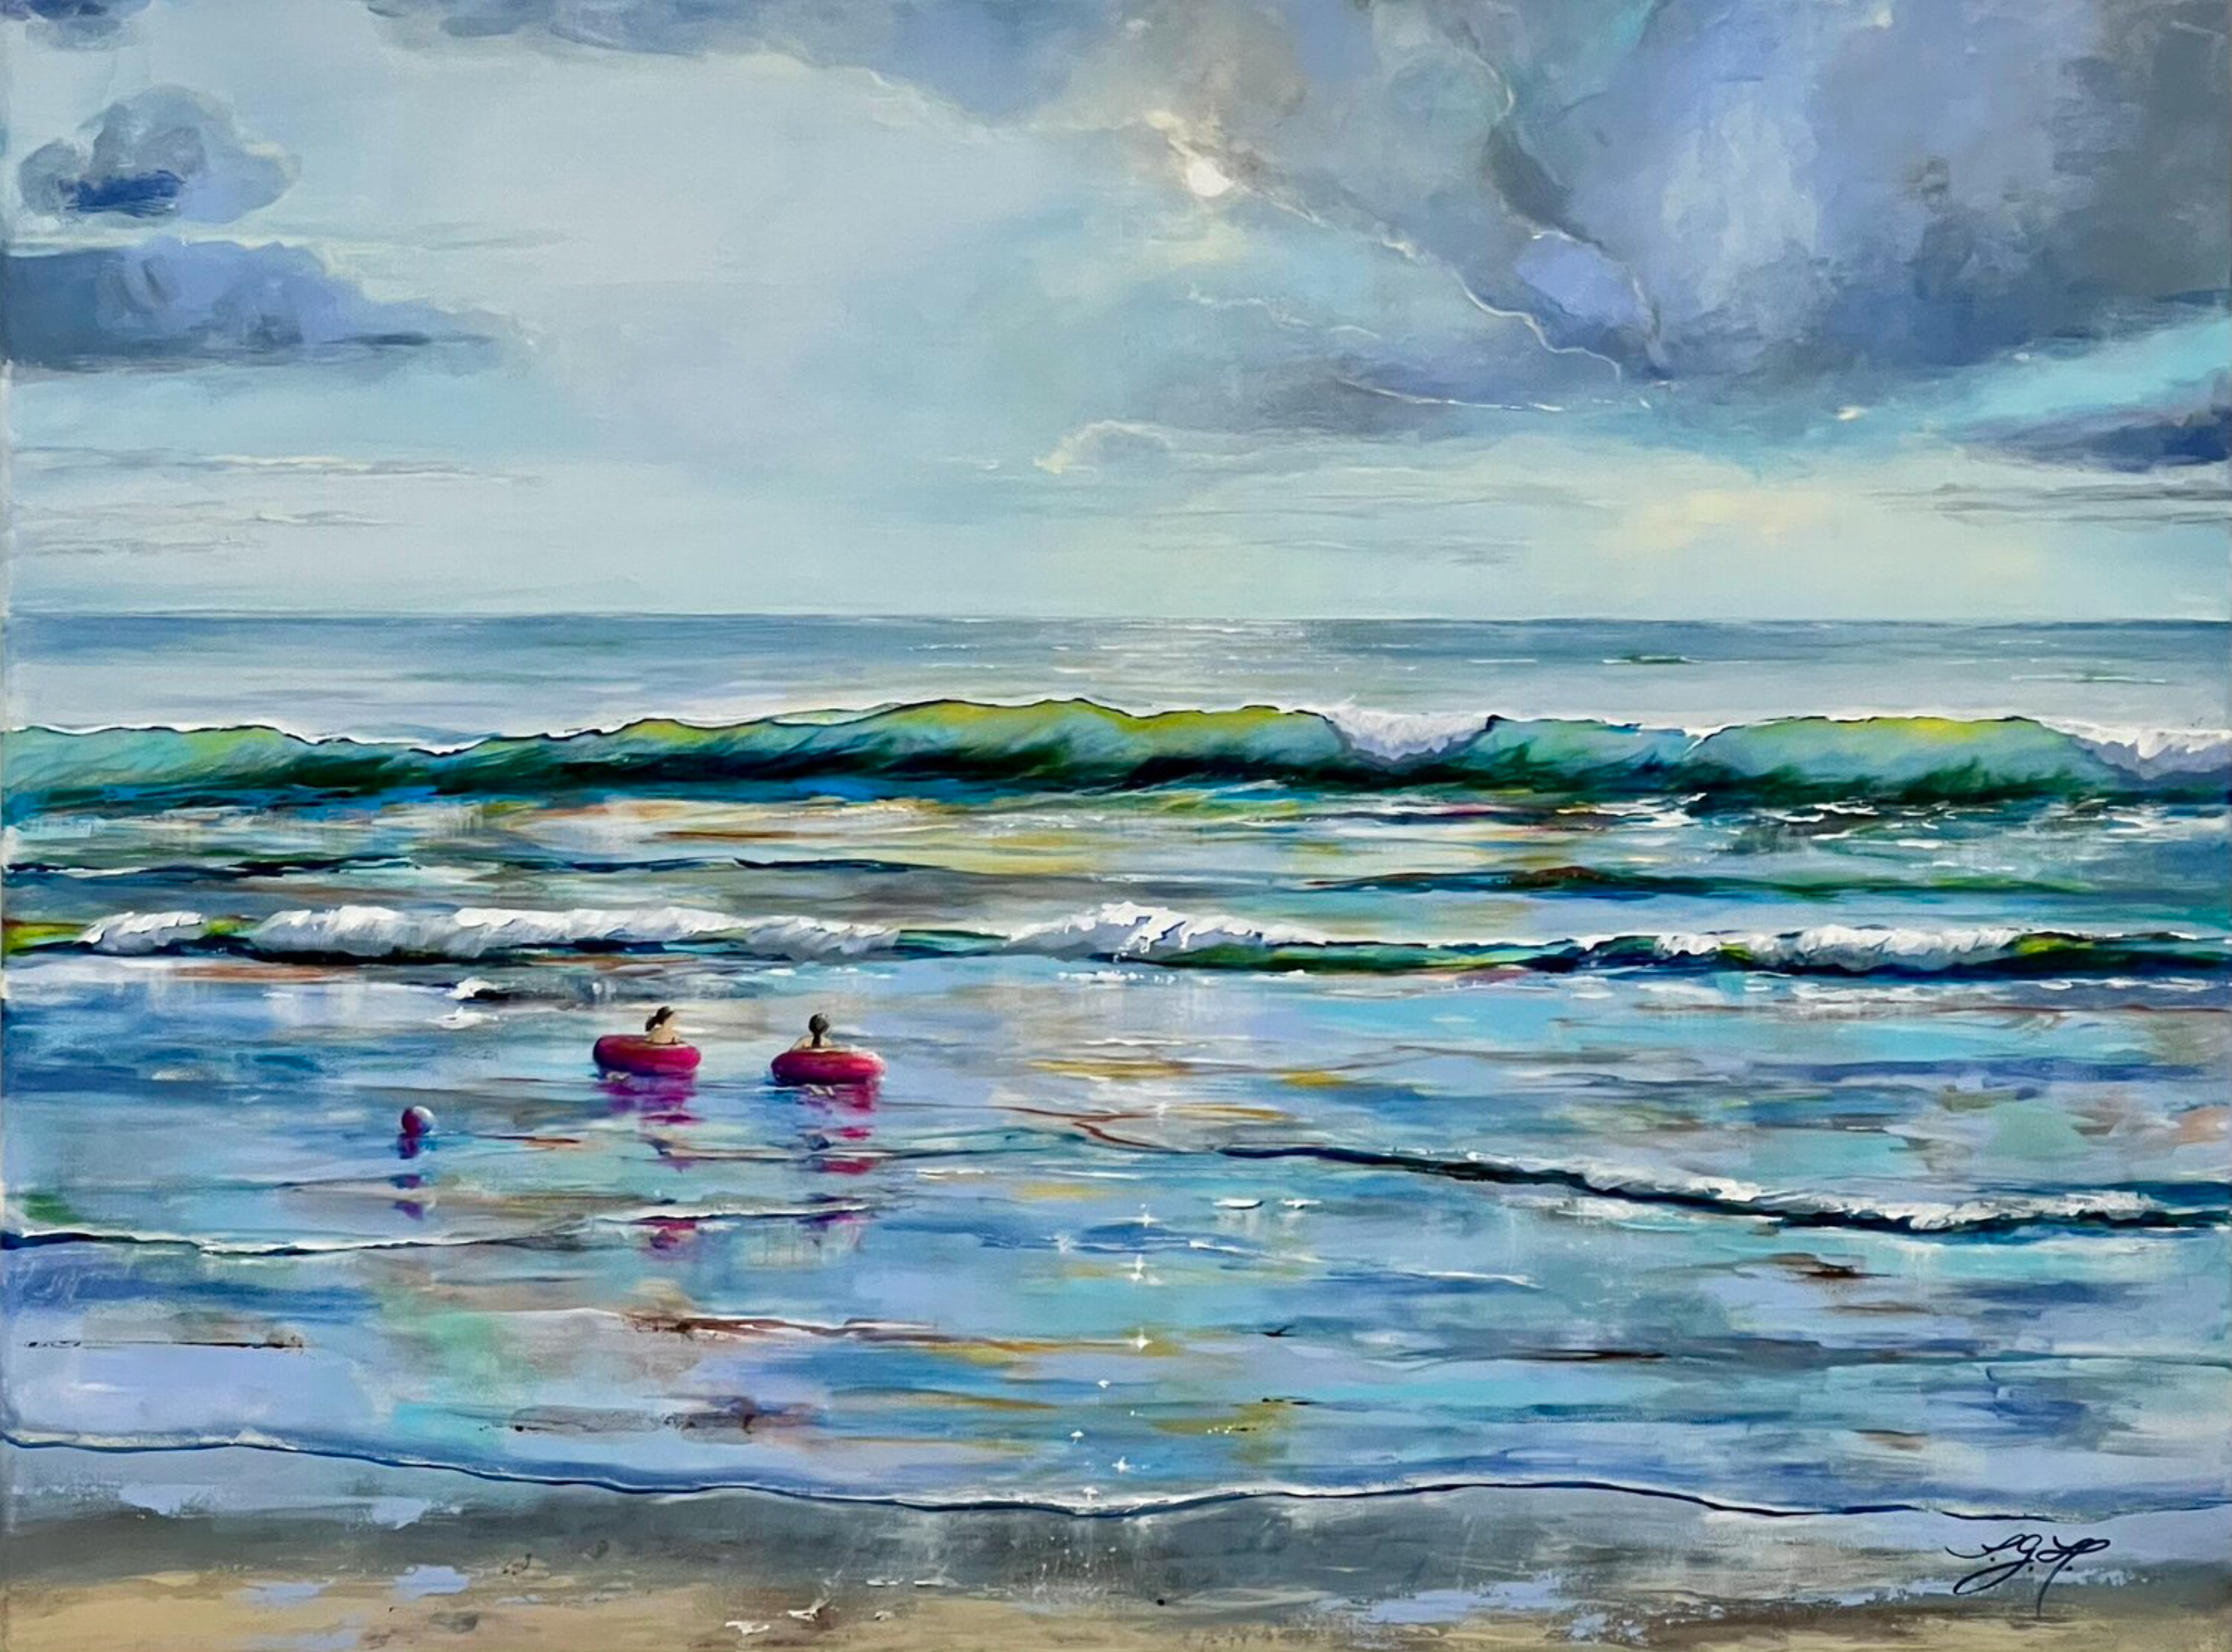 Il dipinto "Summertime 1" di Sandra Gebhardt-Hoepfner mostra l'estate in riva al mare. Il tempo si ferma e l'estate sembra infinita. Tutto è possibile. I bambini galleggiano con i loro anelli da bagno rosa sulle dolci onde dell'oceano. I colori principali sono l'azzurro, il bianco, il grigio chiaro, il turchese, il grigio scuro, il rosa e il marrone sabbia.